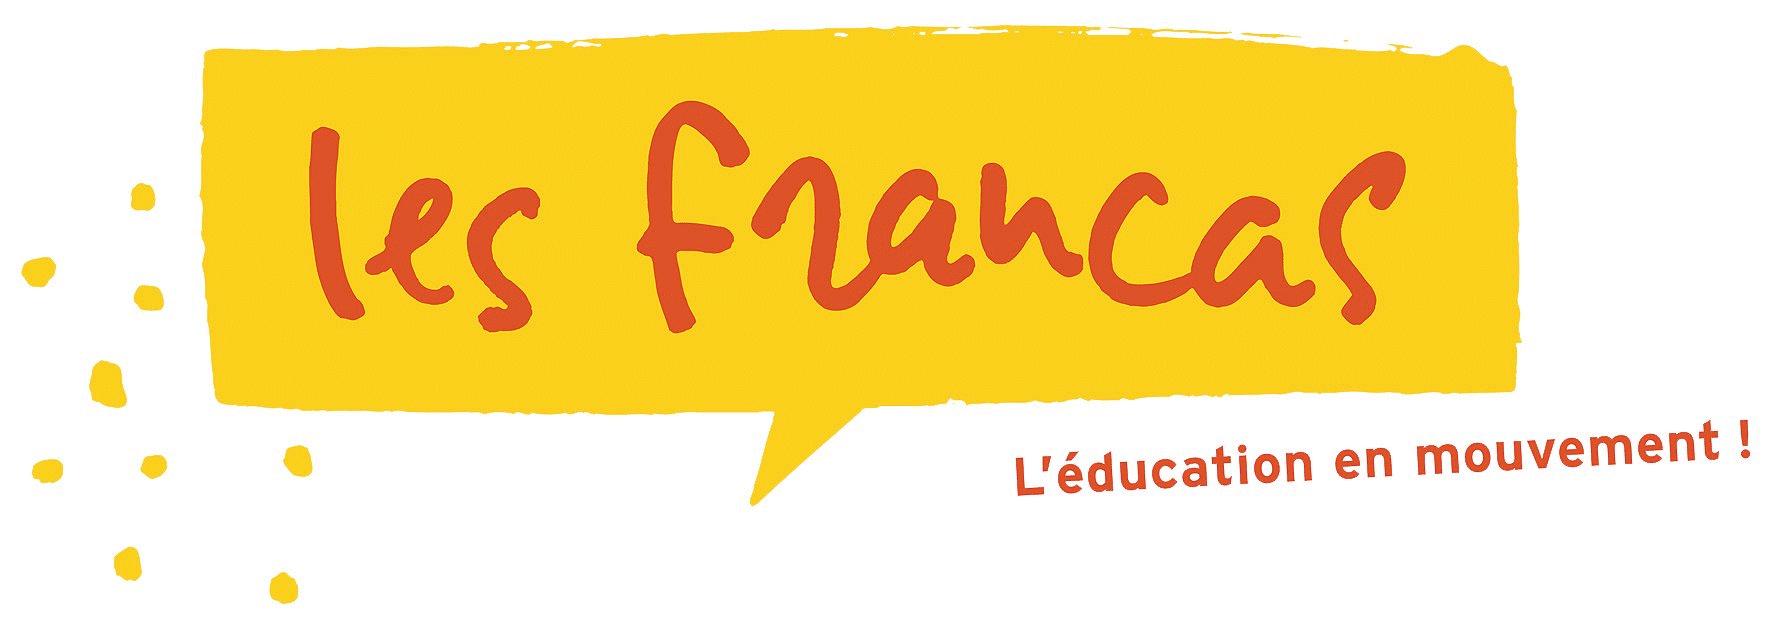 francas-logo